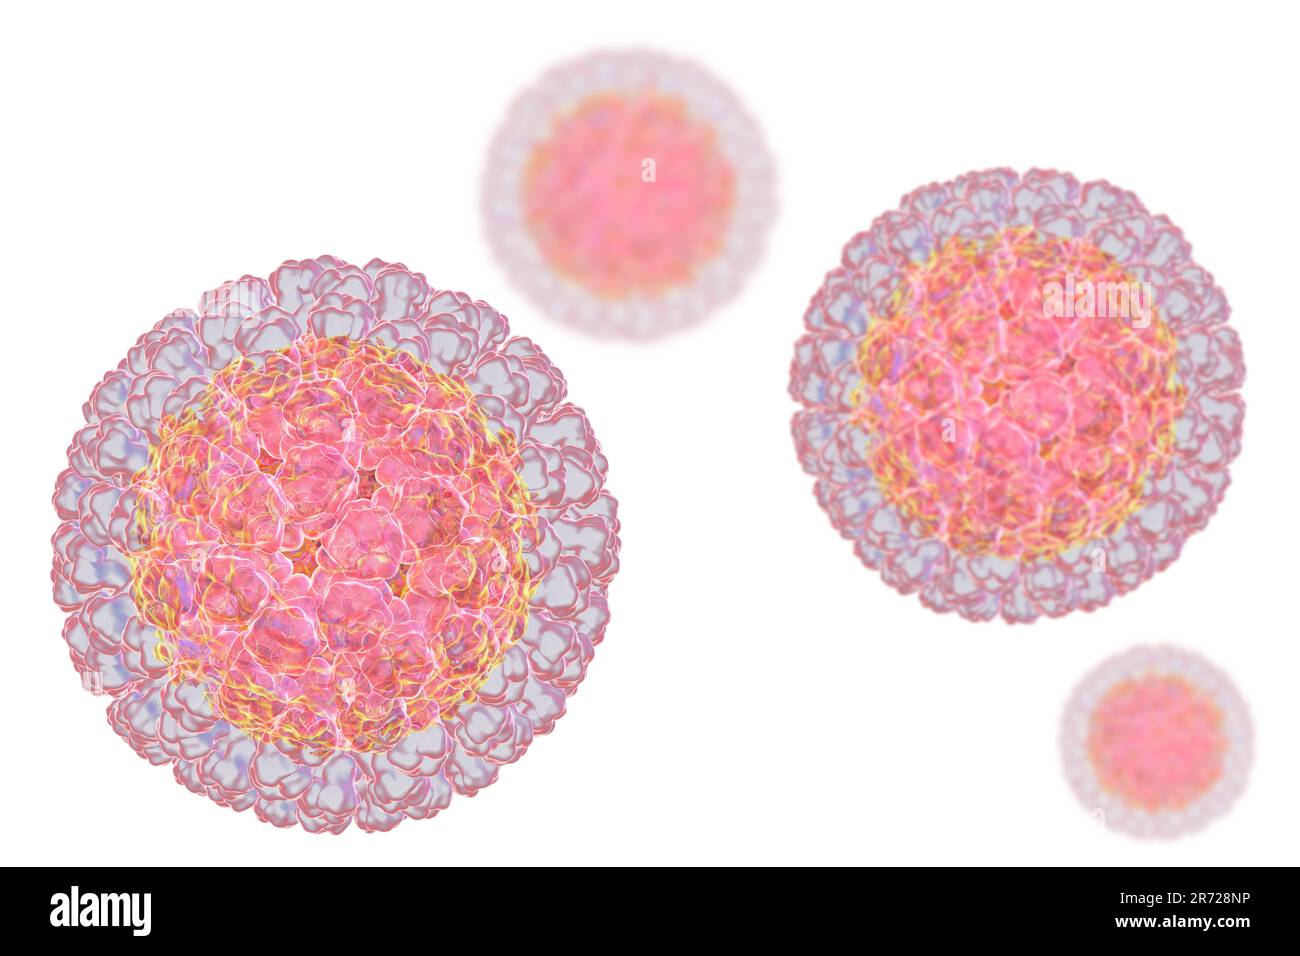 Rotavirus-Partikel, Computergrafiken. Das Viruspartikel besteht aus einem RNA-Kern (Ribonukleinsäure), der von einem dreischichtigen Kapsid umgeben ist. Rotaviren Stockfoto